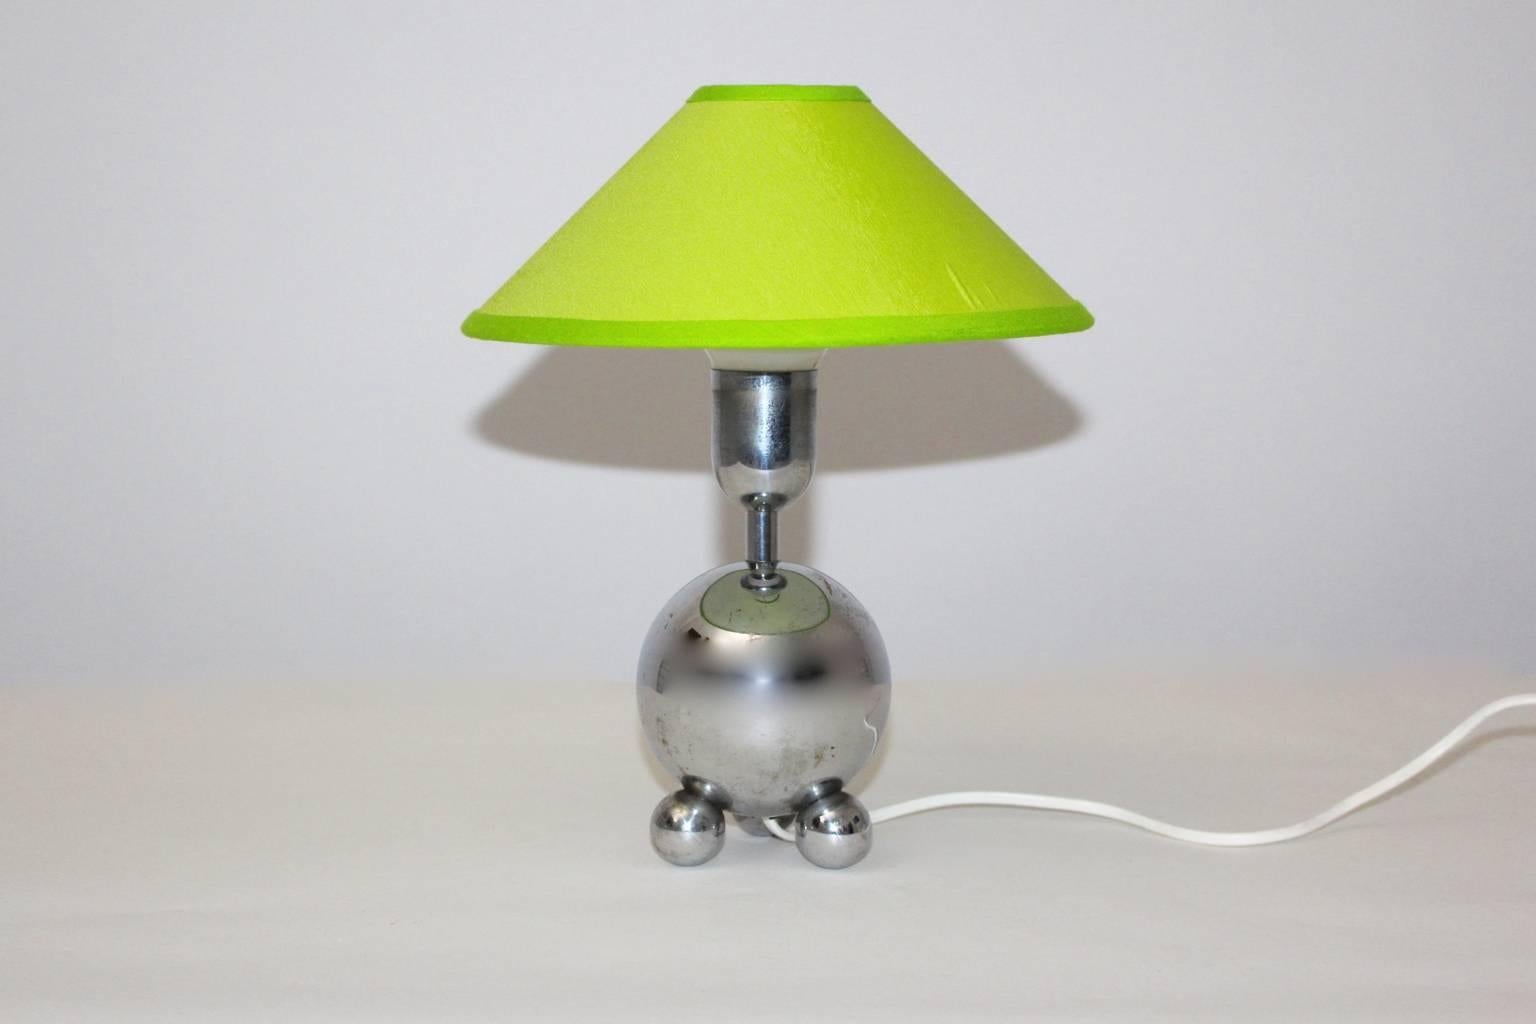 Lampe de table vintage Mid Century Modern en métal chromé conçue et fabriquée vers 1950 en France.
Une étonnante et gracieuse lampe de table avec une base chromée et un abat-jour renouvelé recouvert de tissu textile vert citron.
En outre, la lampe